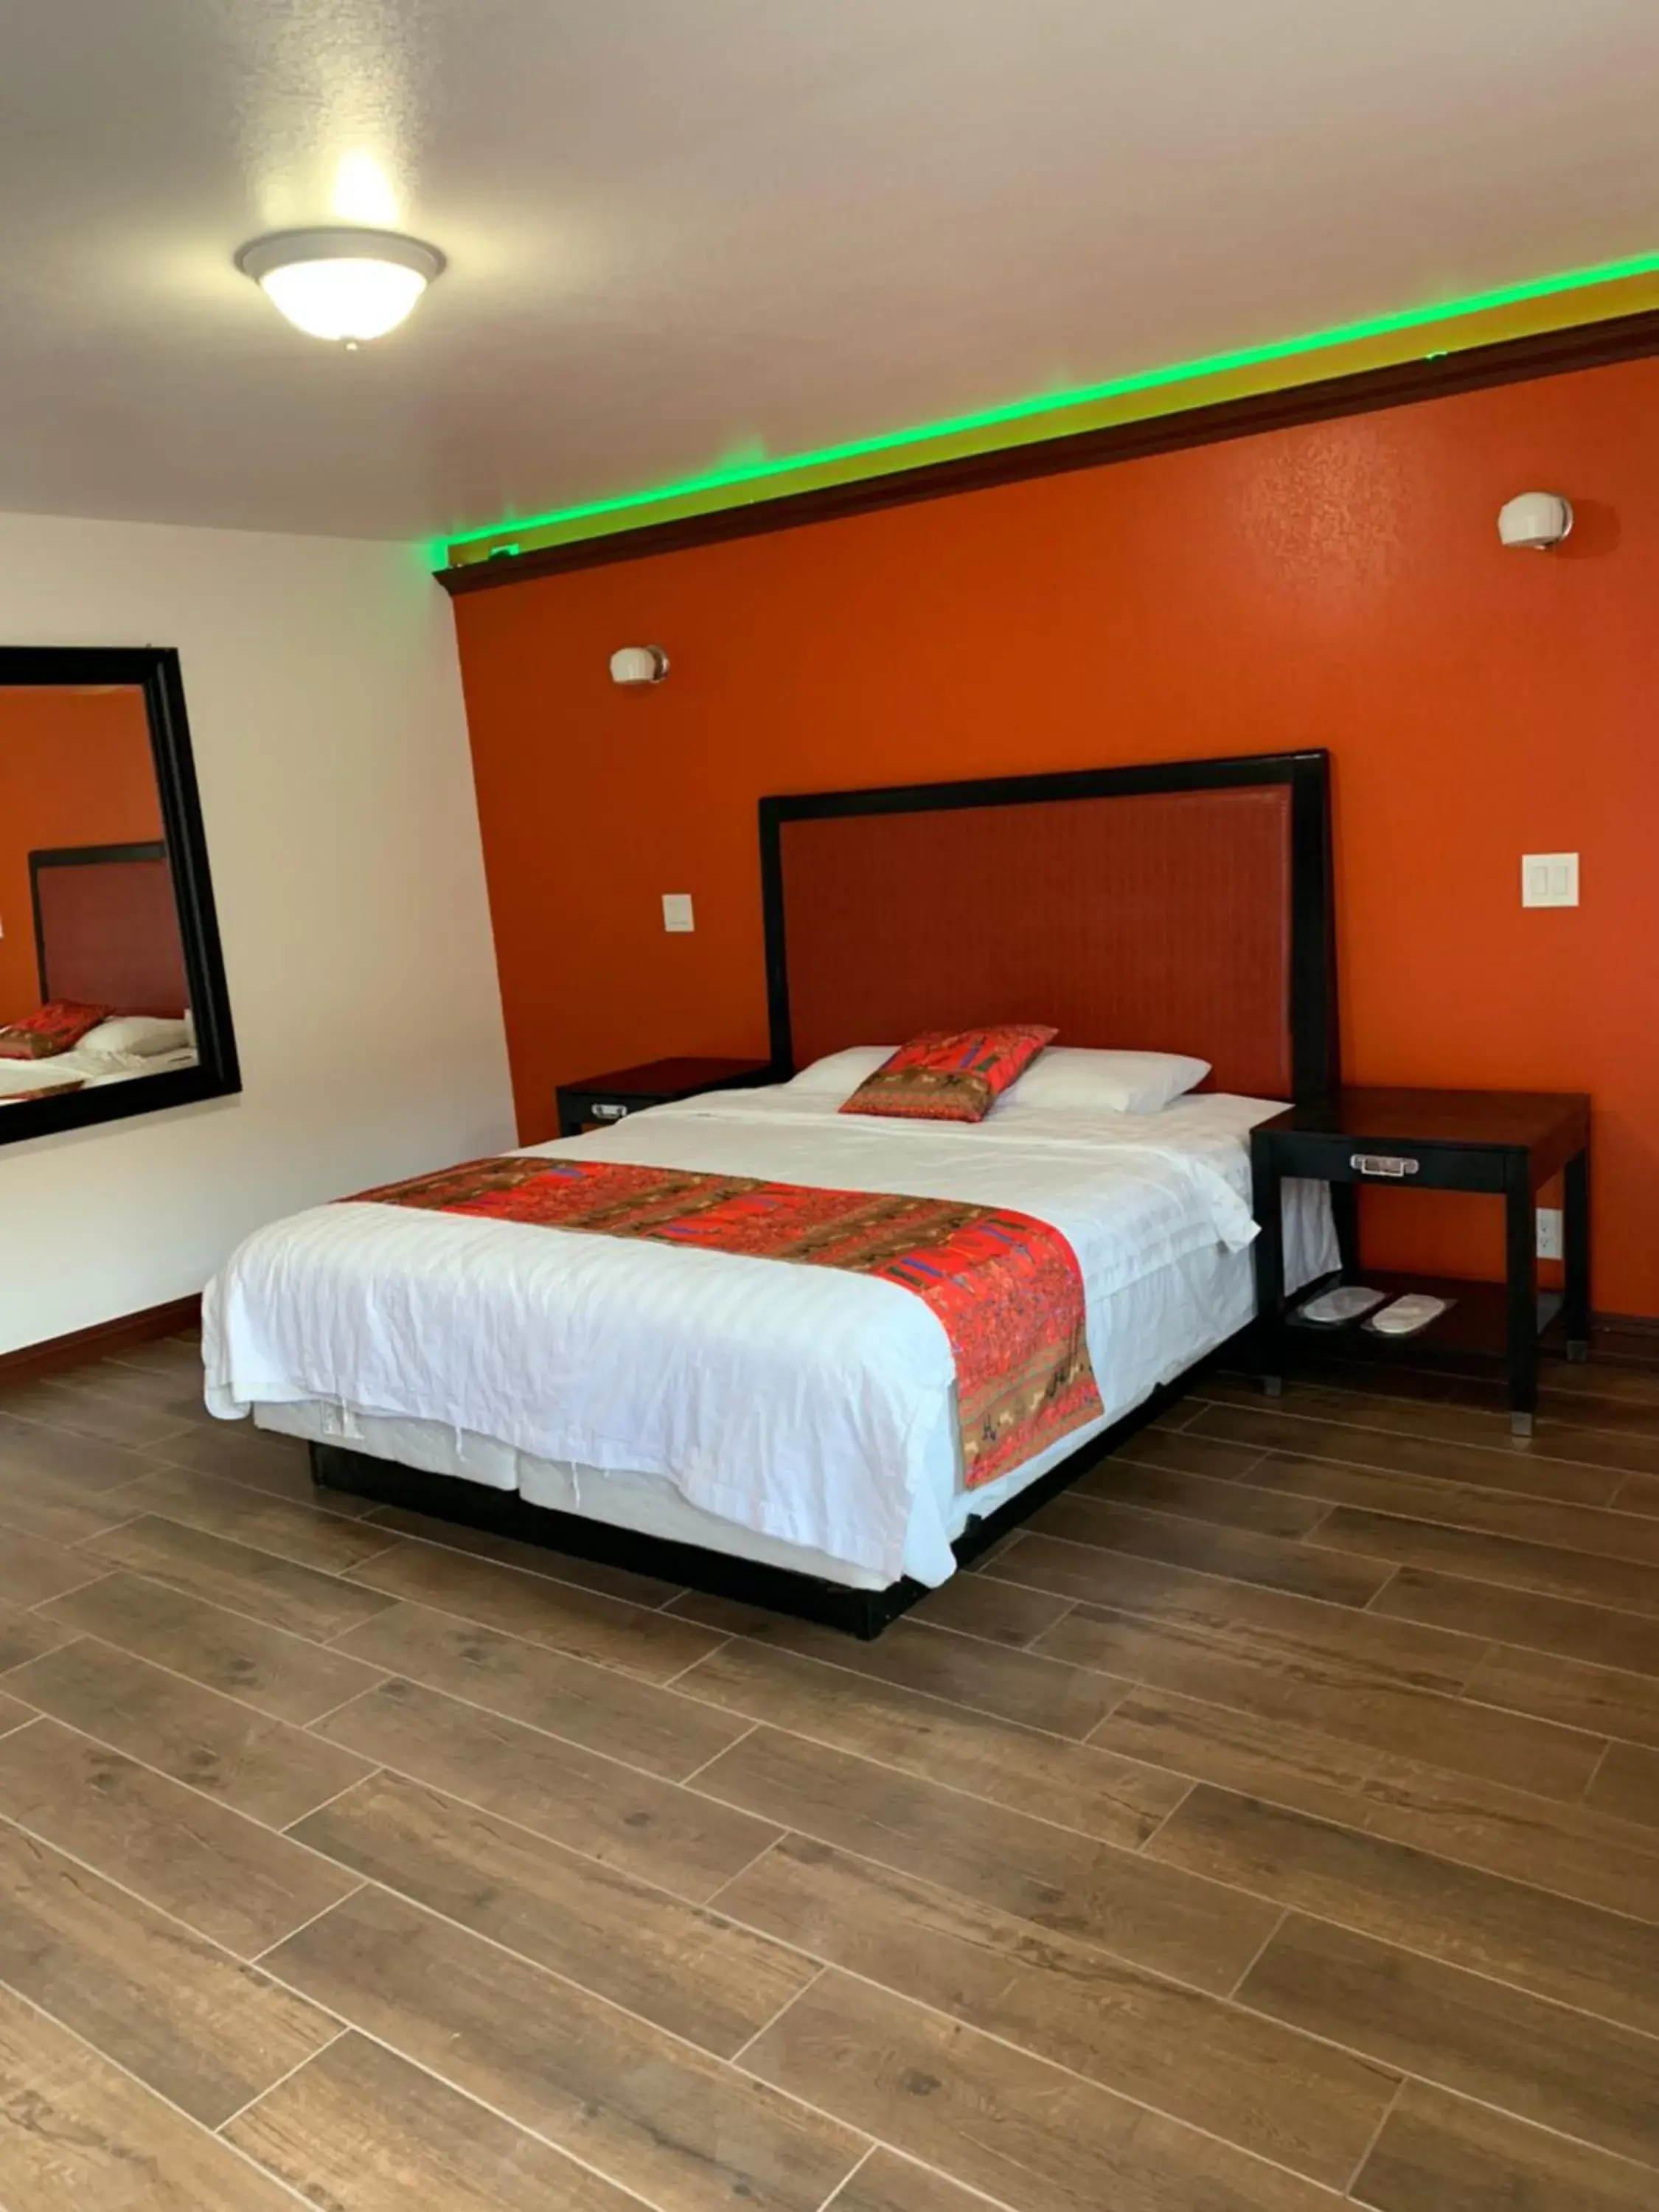 Bed in norwalk inn & suites